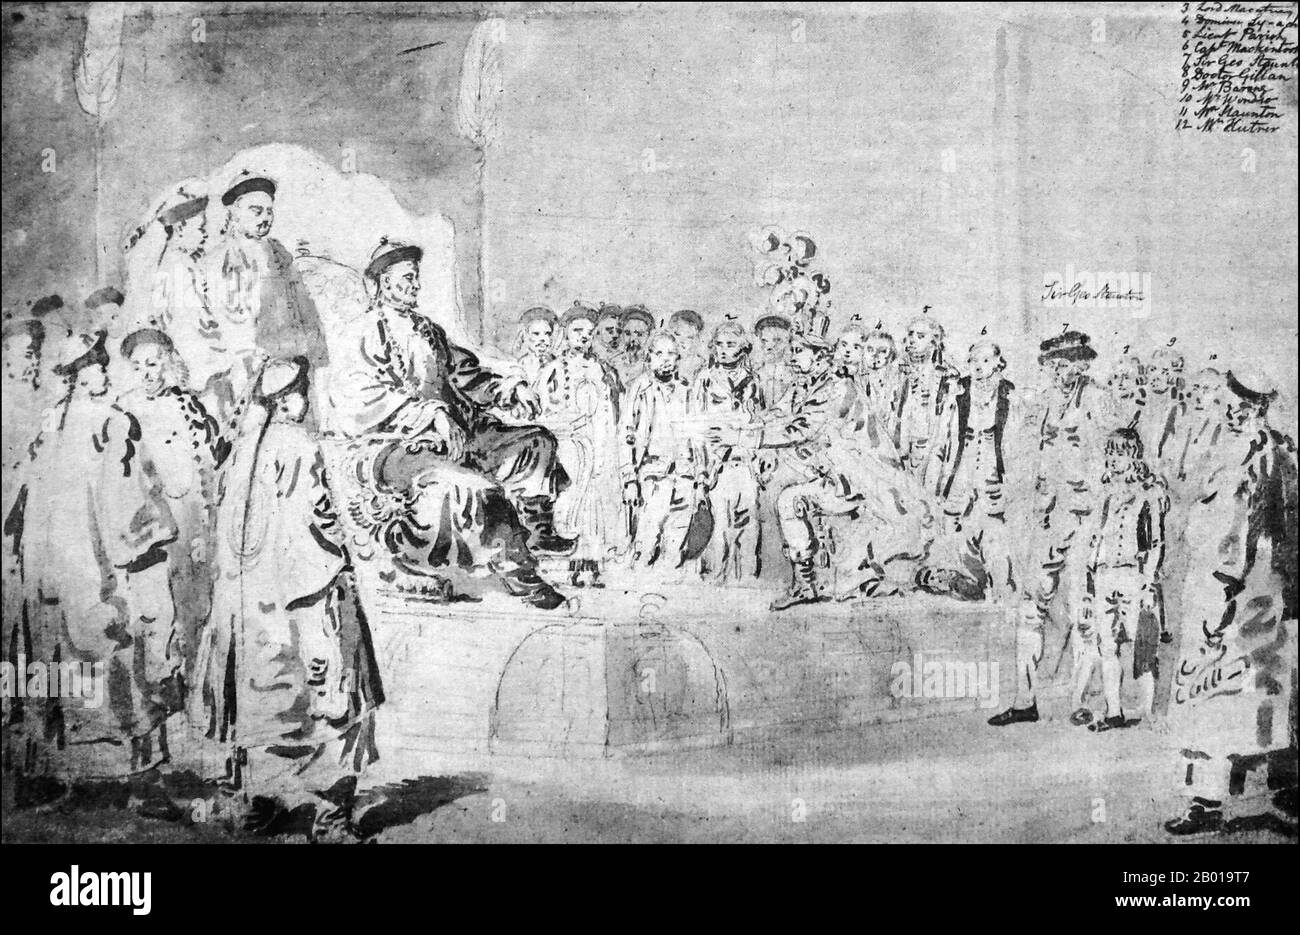 Cina: L'Ambasciata di Macartney in Cina. L'imperatore Qianlong riceve un missivo dal Signore inginocchiato Macartney. Disegno di William Alexander (1767-1816), 1793. L'Ambasciata di Macartney, chiamata anche Missione di Macartney, fu un'ambasciata britannica in Cina nel 1793. Prende il nome dal primo inviato della Gran Bretagna alla Cina, George Macartney, che ha guidato l’impresa. L'obiettivo dell'ambasciata era convincere l'imperatore Qianlong ad allentare le restrizioni sul commercio tra la Gran Bretagna e la Cina. L'ambasciata alla fine non ha avuto successo, risultato di visioni mondiali concorrenti incompatibili. Foto Stock